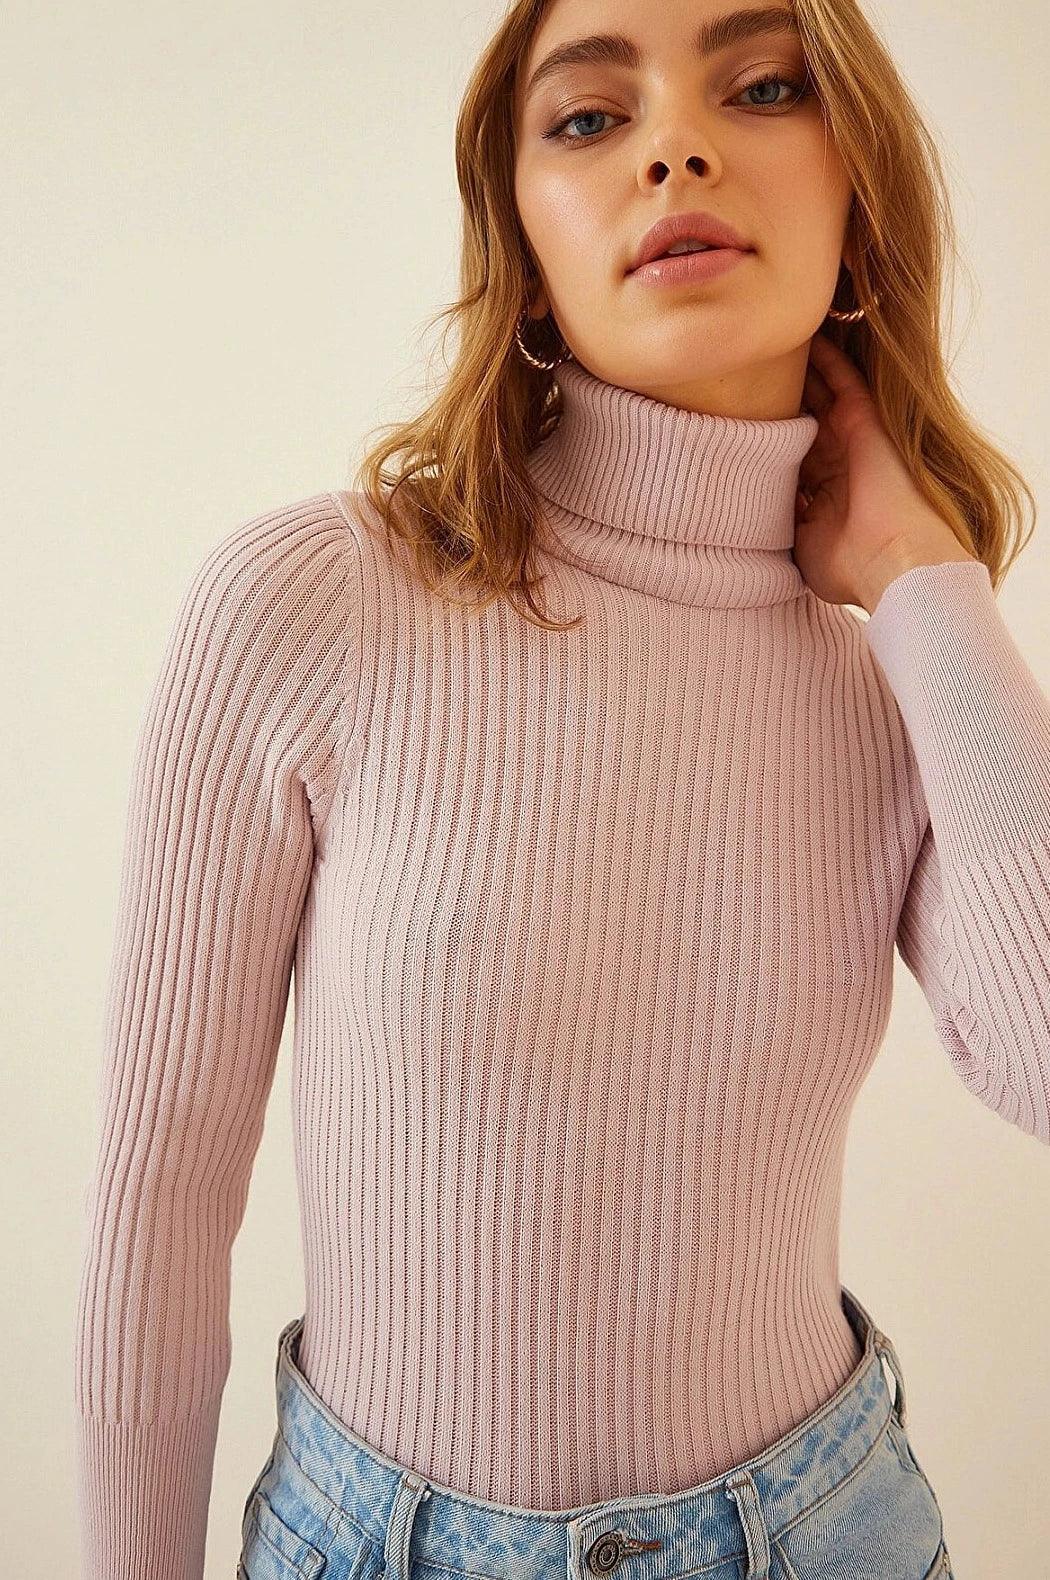 Elegant Turtleneck Knitwear Sweater Top - Powder Pink